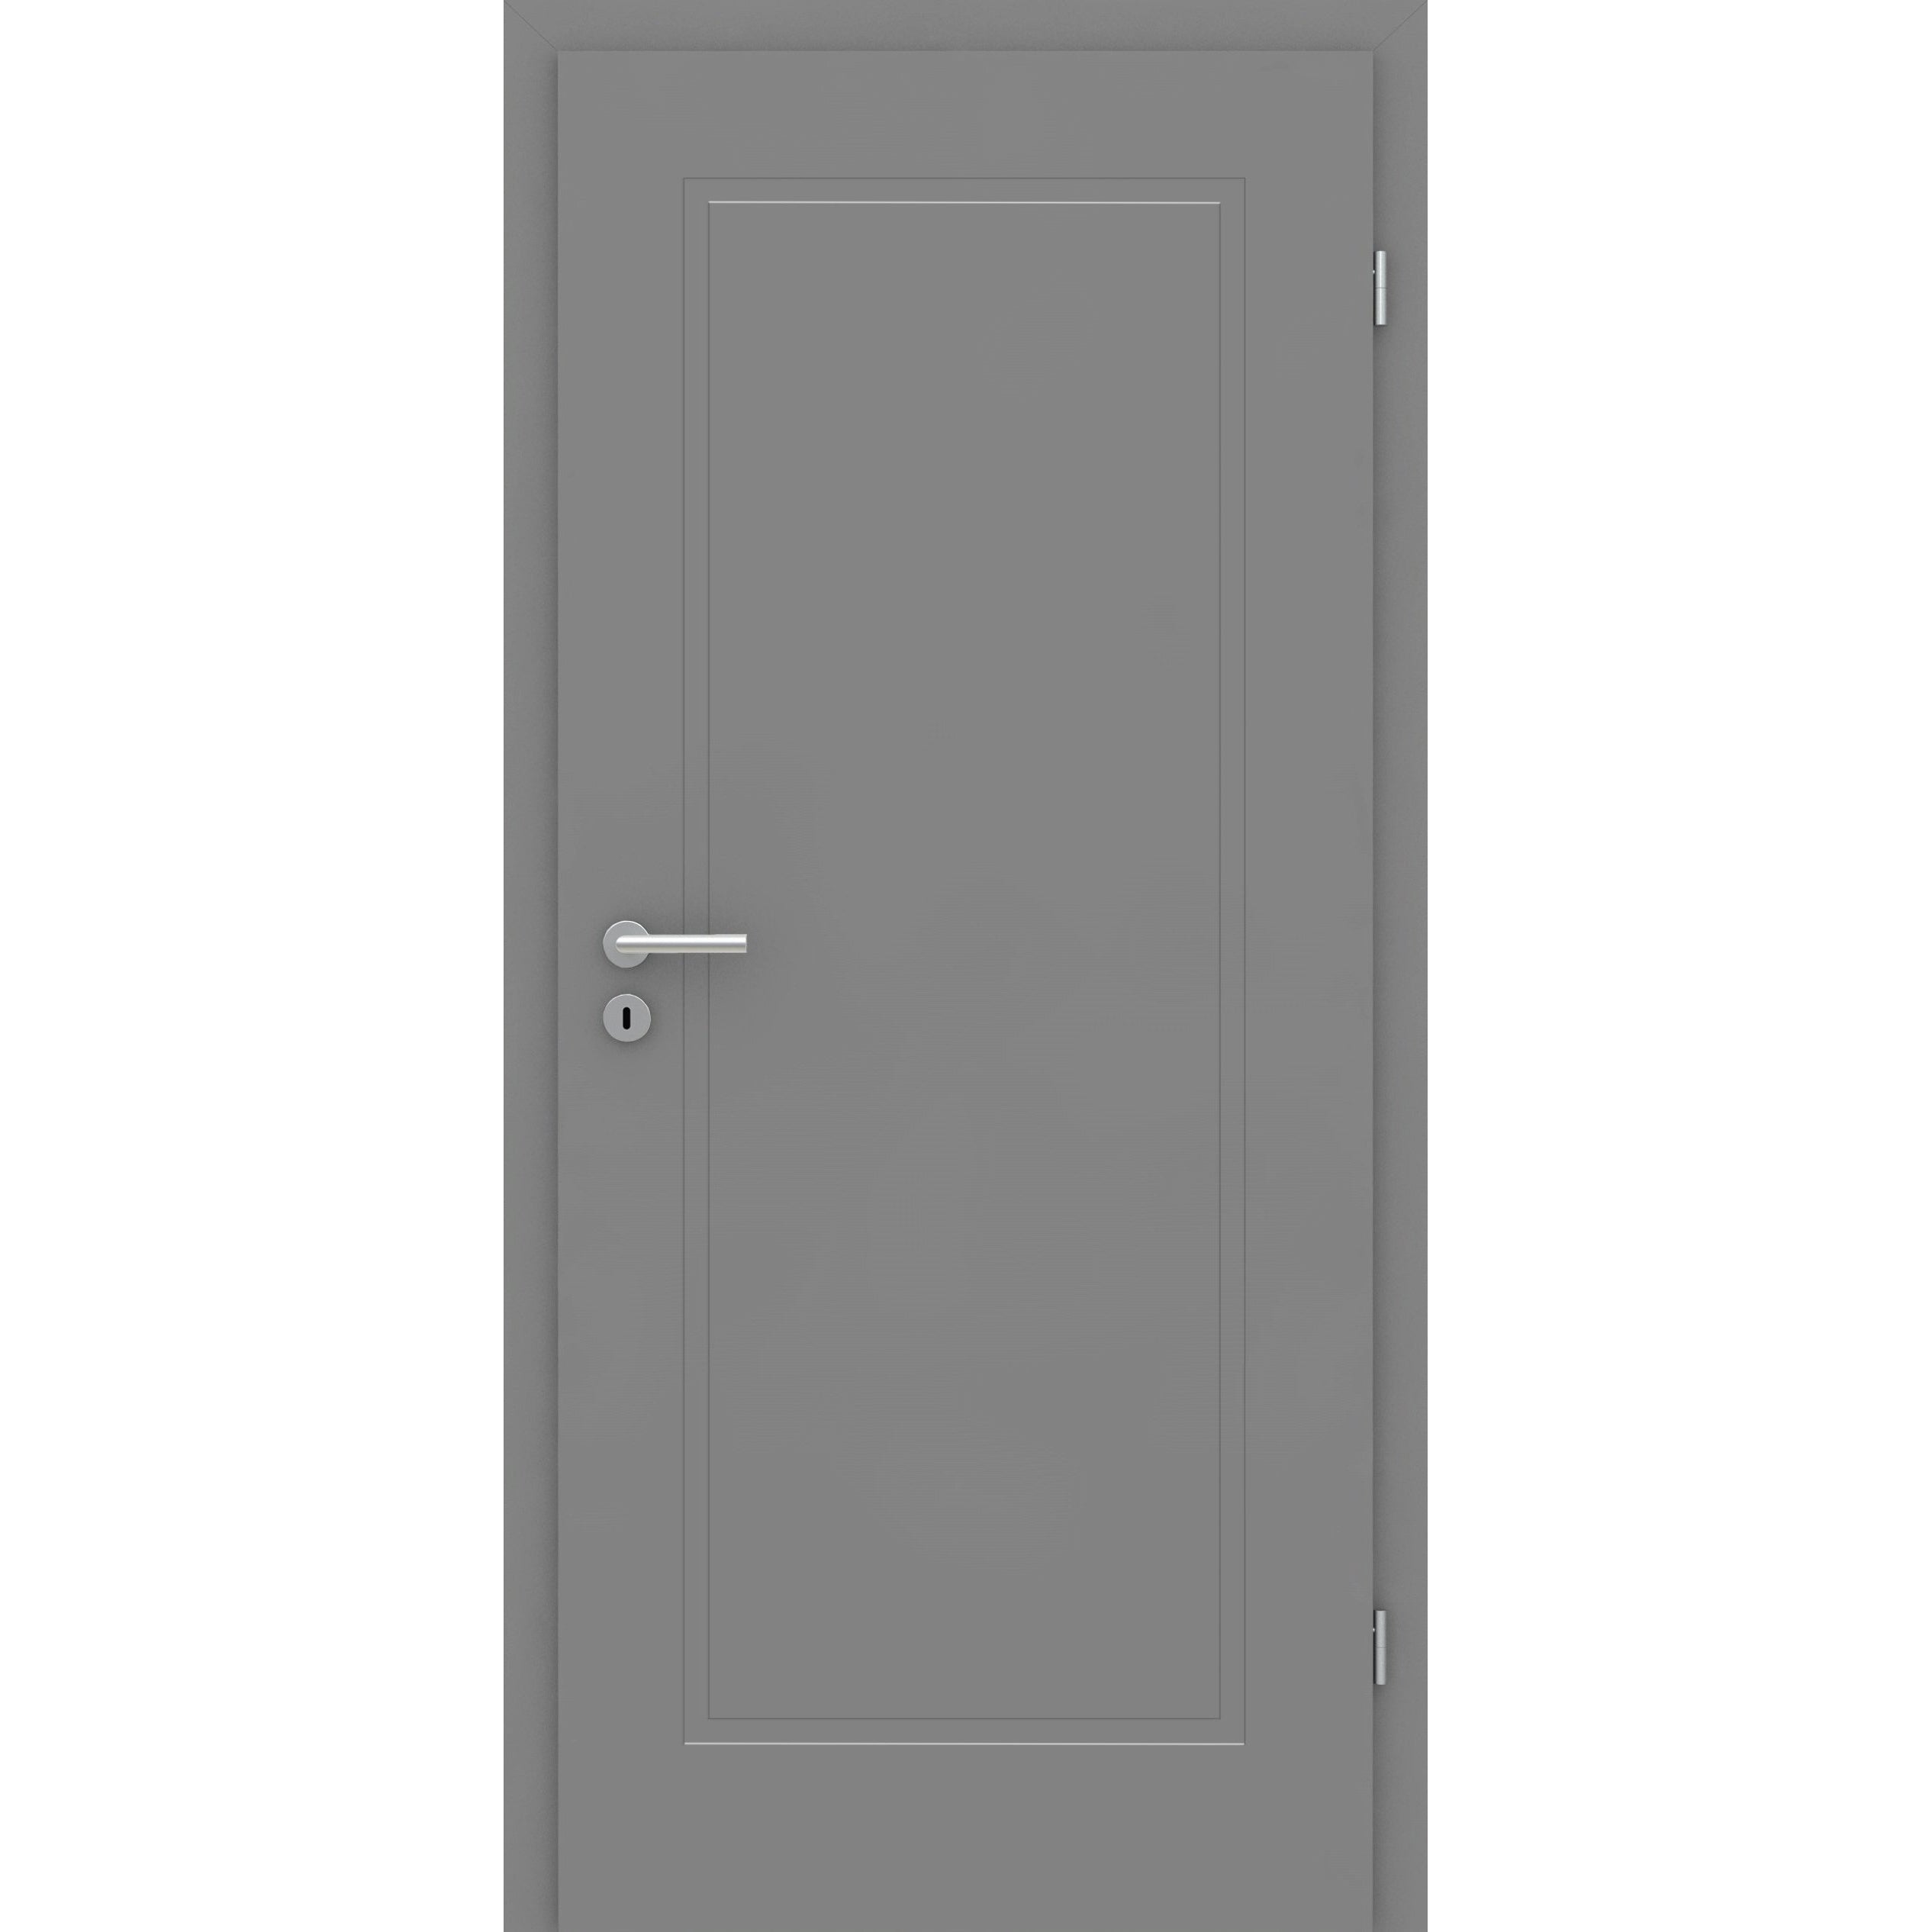 Wohnungseingangstür grau 1 Kassette Designkante SK2 / KK3 - Modell Stiltür M17